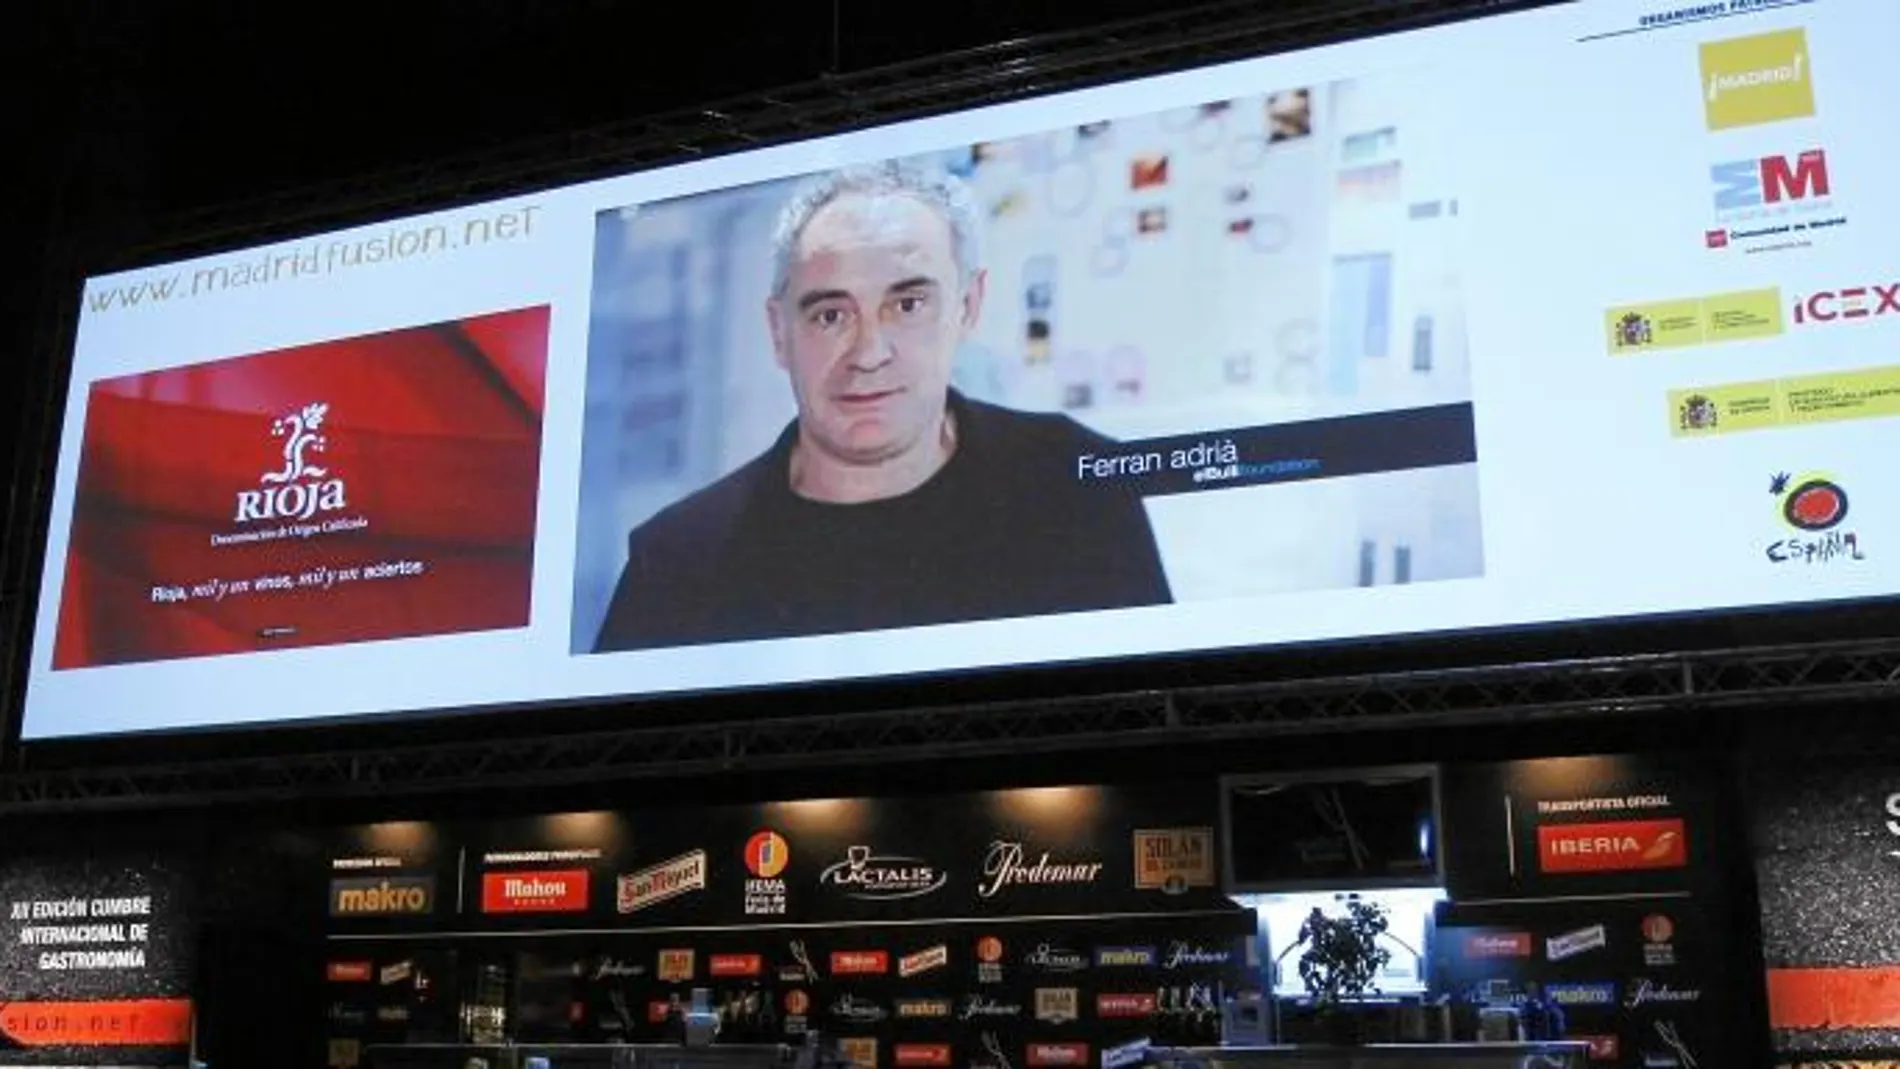 Ferran Adrià, que se encuentra en Nueva York, intervino por videoconferencia